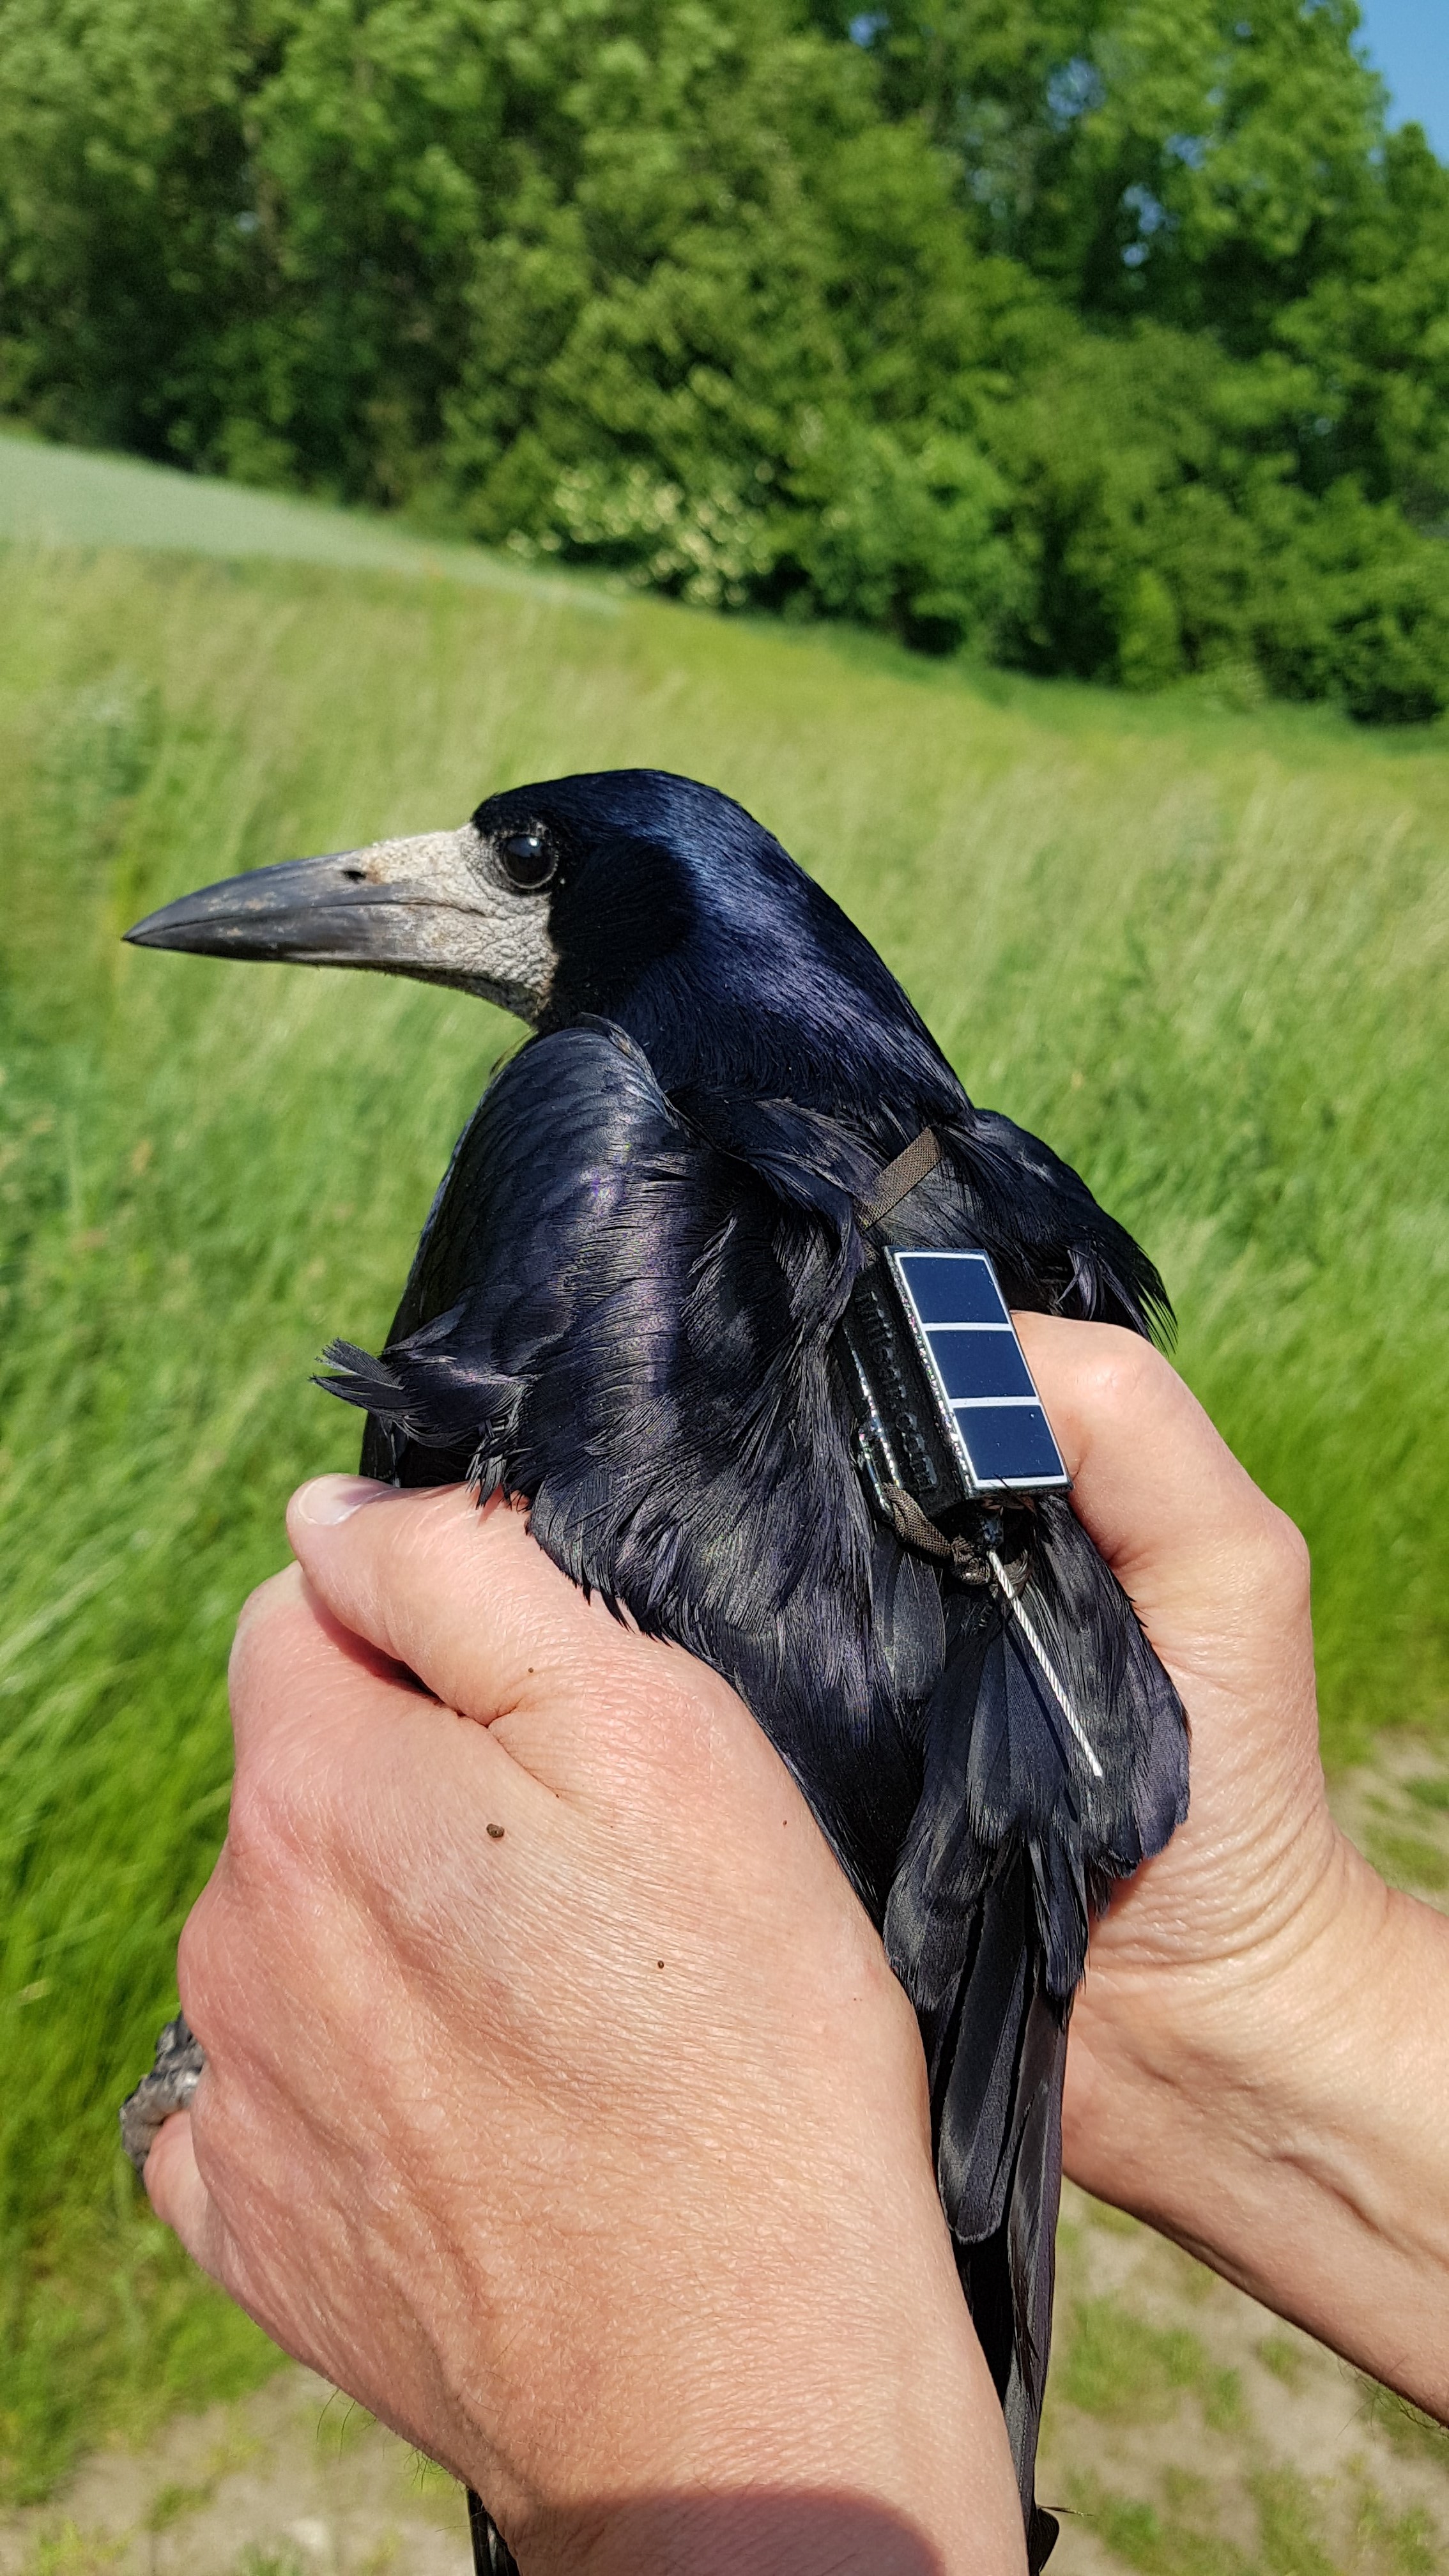 Rage med GPS sender der fortaeller hvor fuglen opholder sig foto Ole Roland Therkildsen Aarhus Universitet